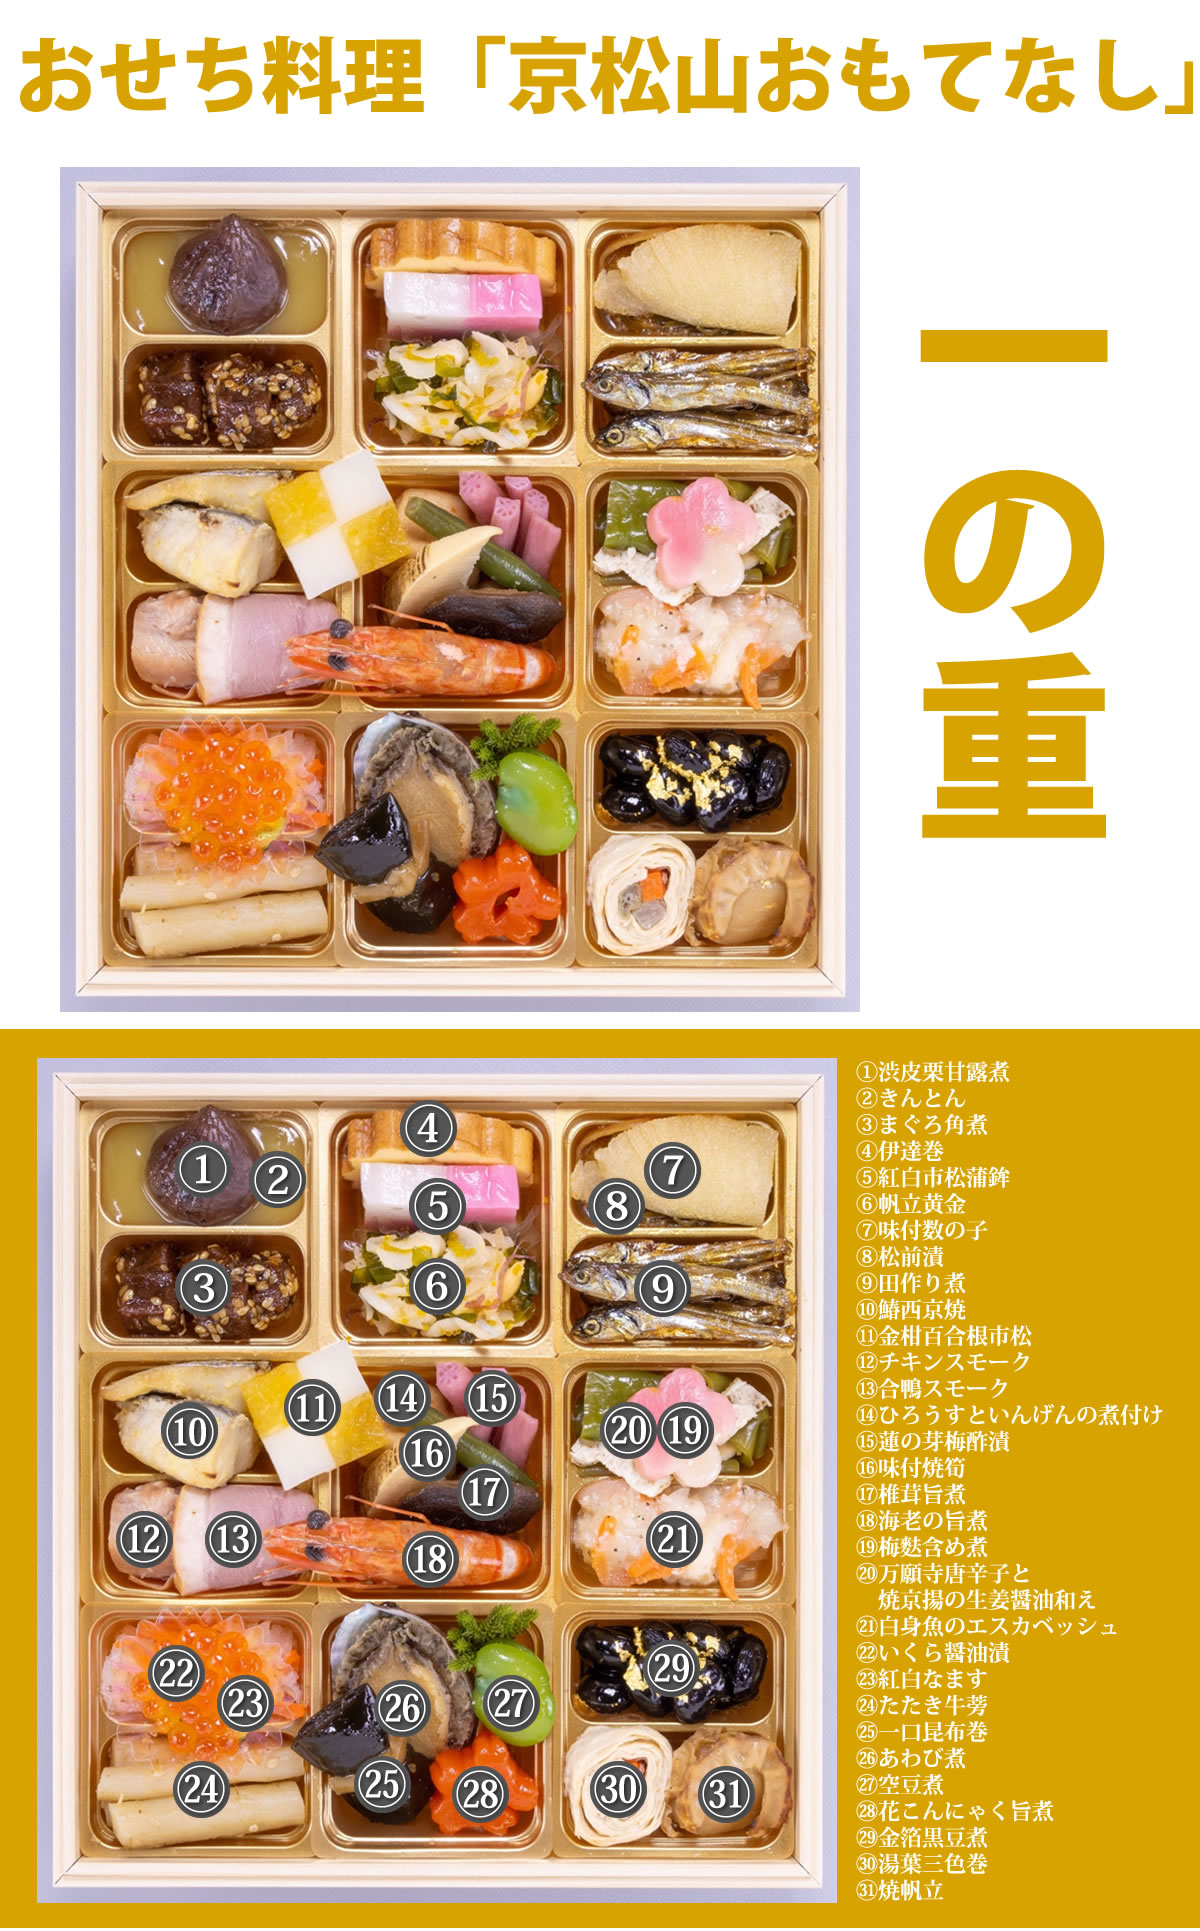 京都しょうざん個食おせち料理「京松山おもてなし」 6.0寸 2人前 31品入 和風 洋風 中華 数量限定